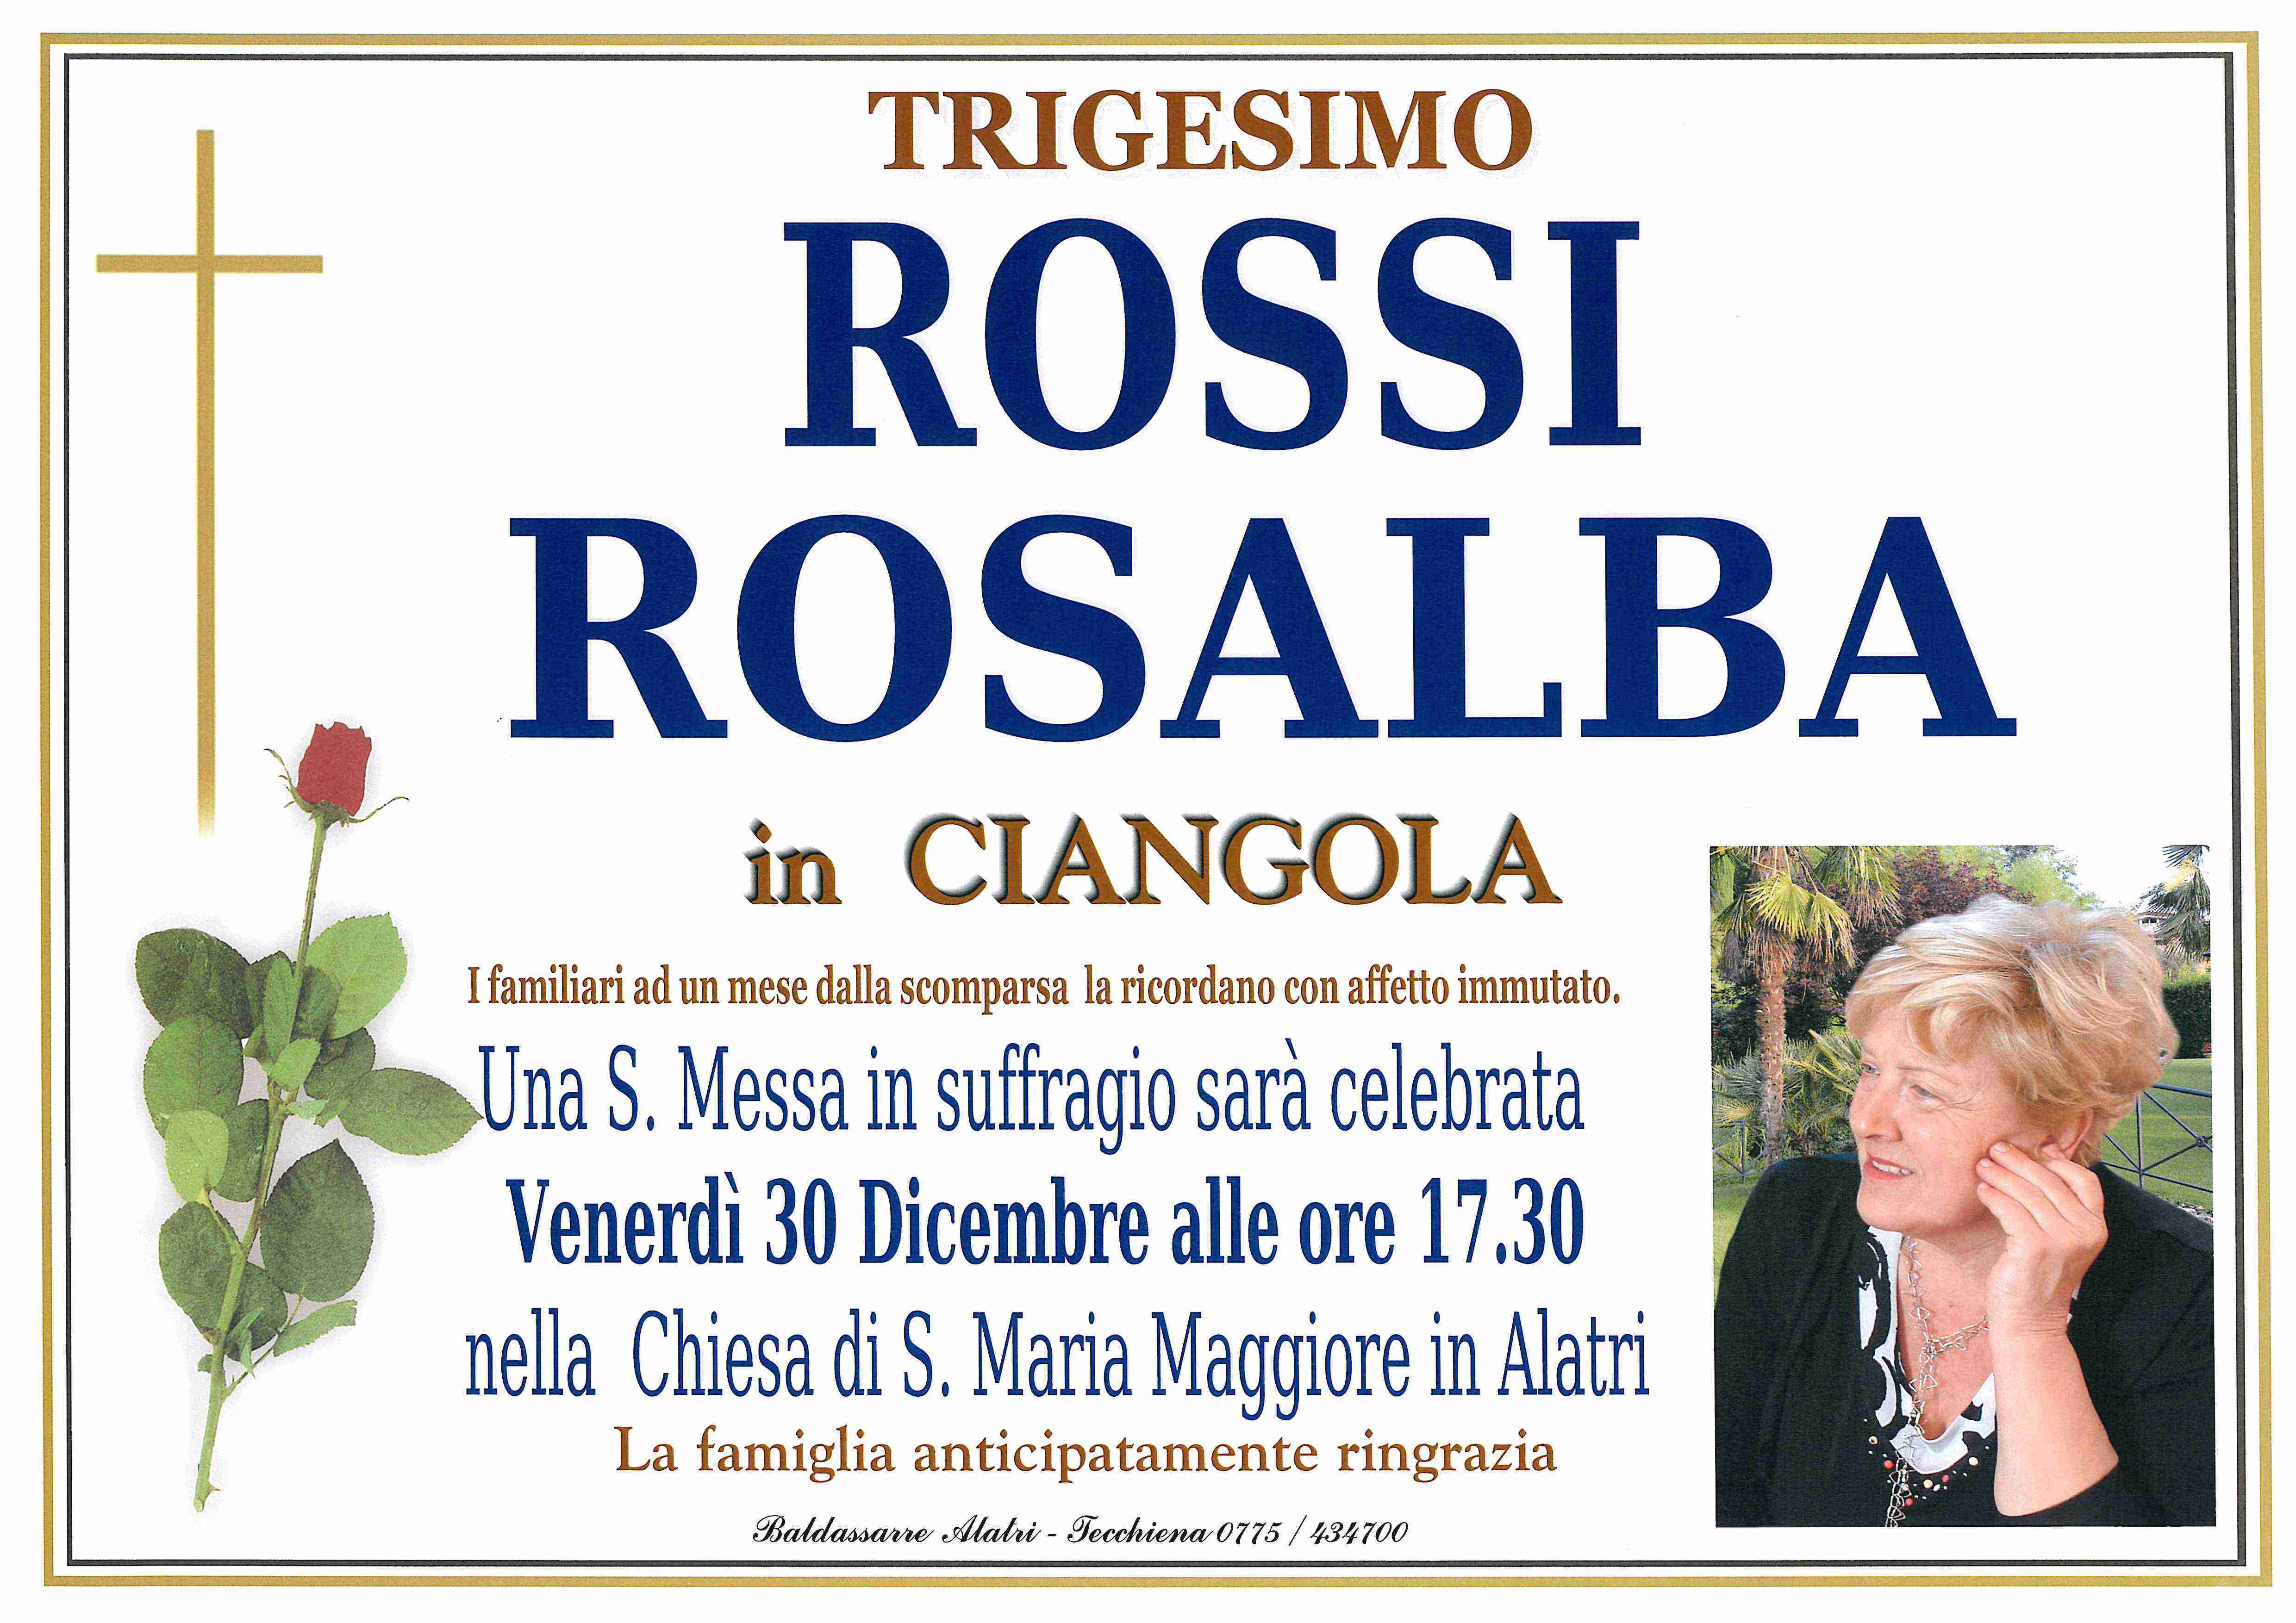 Rosalba Rossi